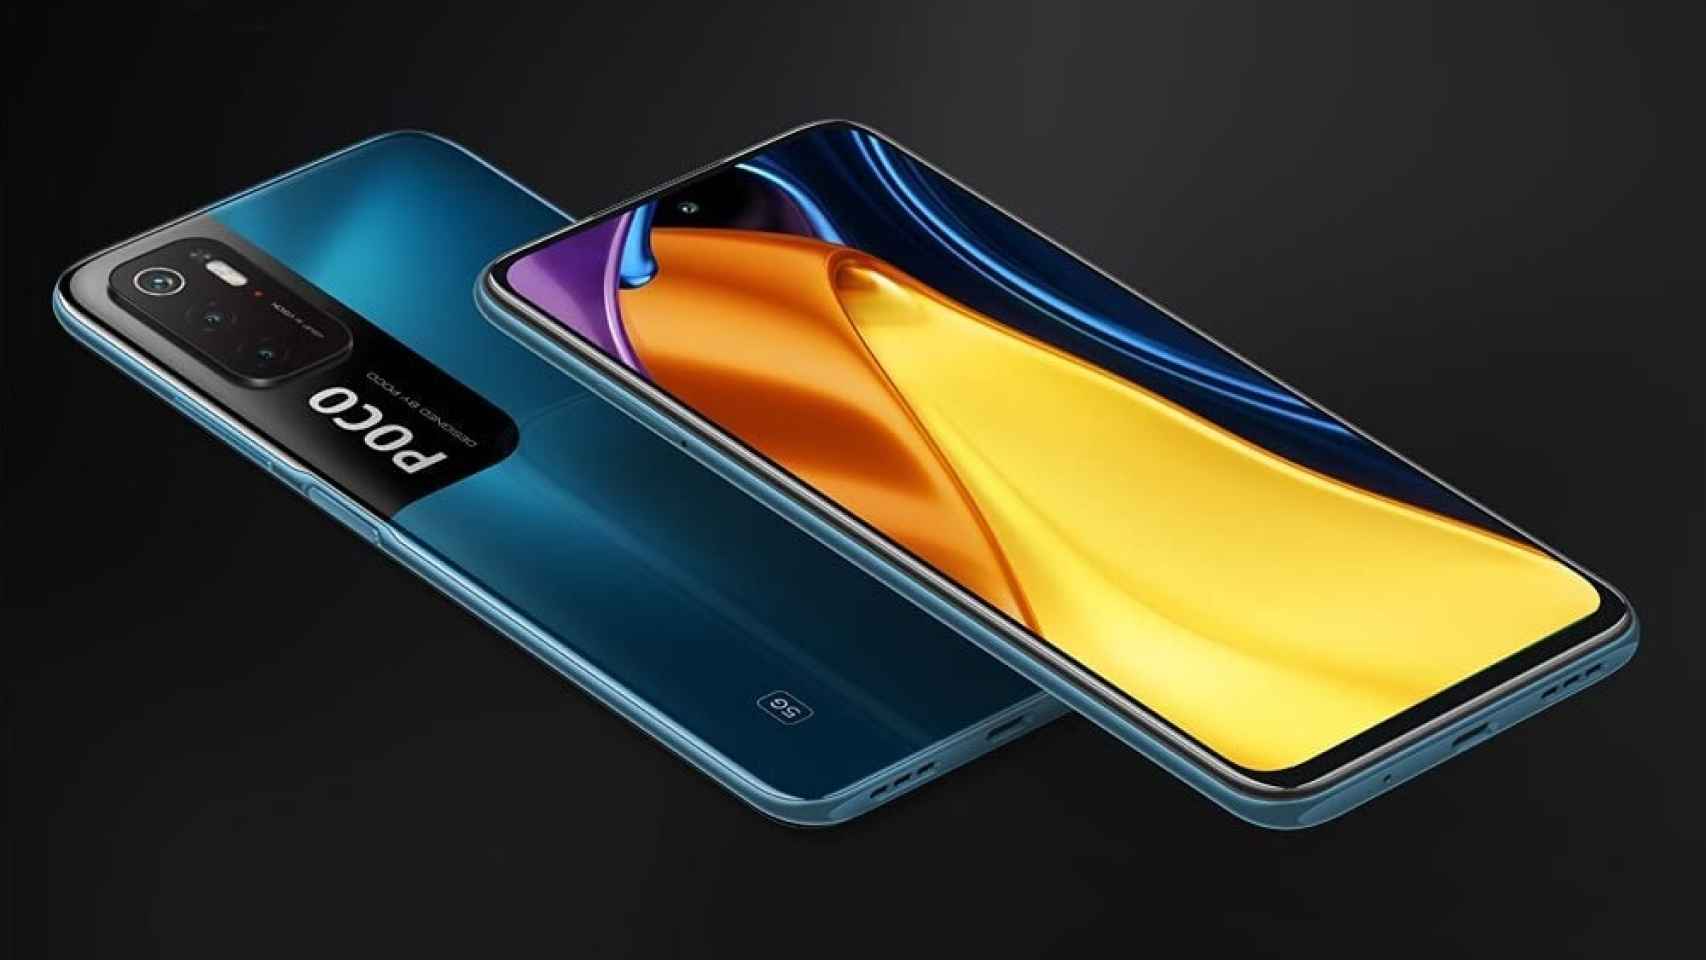 Nuevo Poco M3 Pro 5G: Xiaomi arrasar en la gama media con un precio ridículo